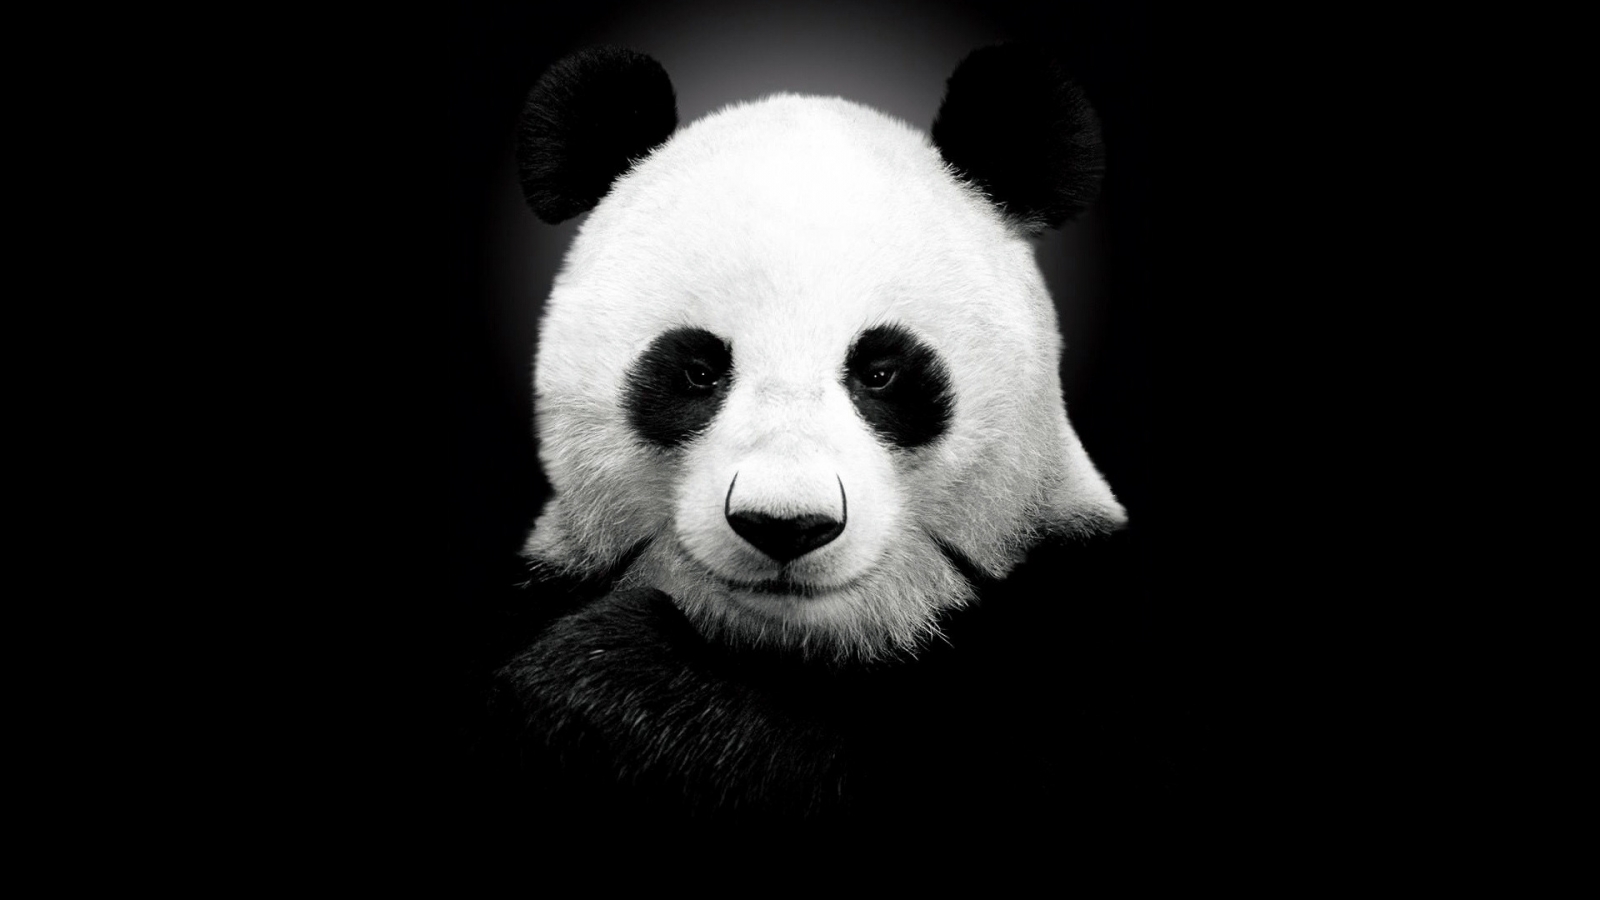 Panda Bear for 1600 x 900 HDTV resolution